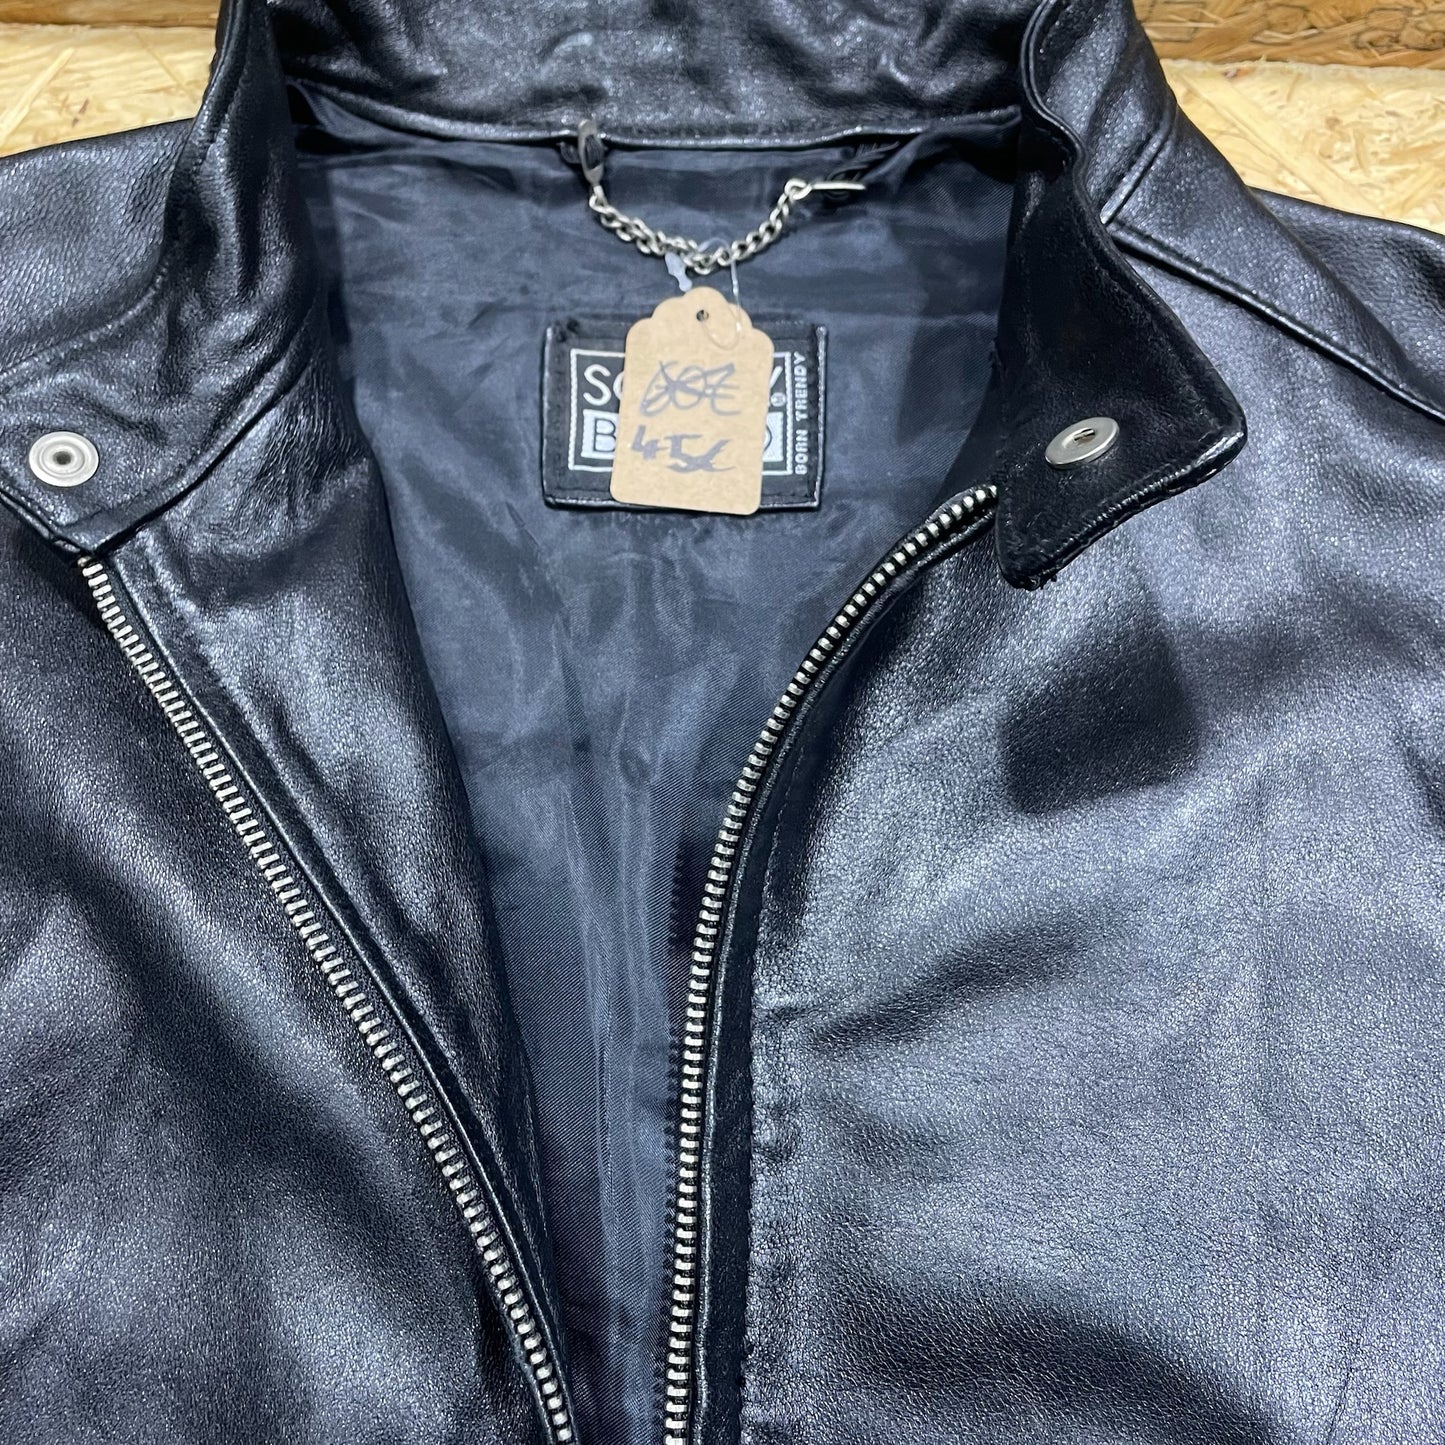 Vintage Leder Jacke